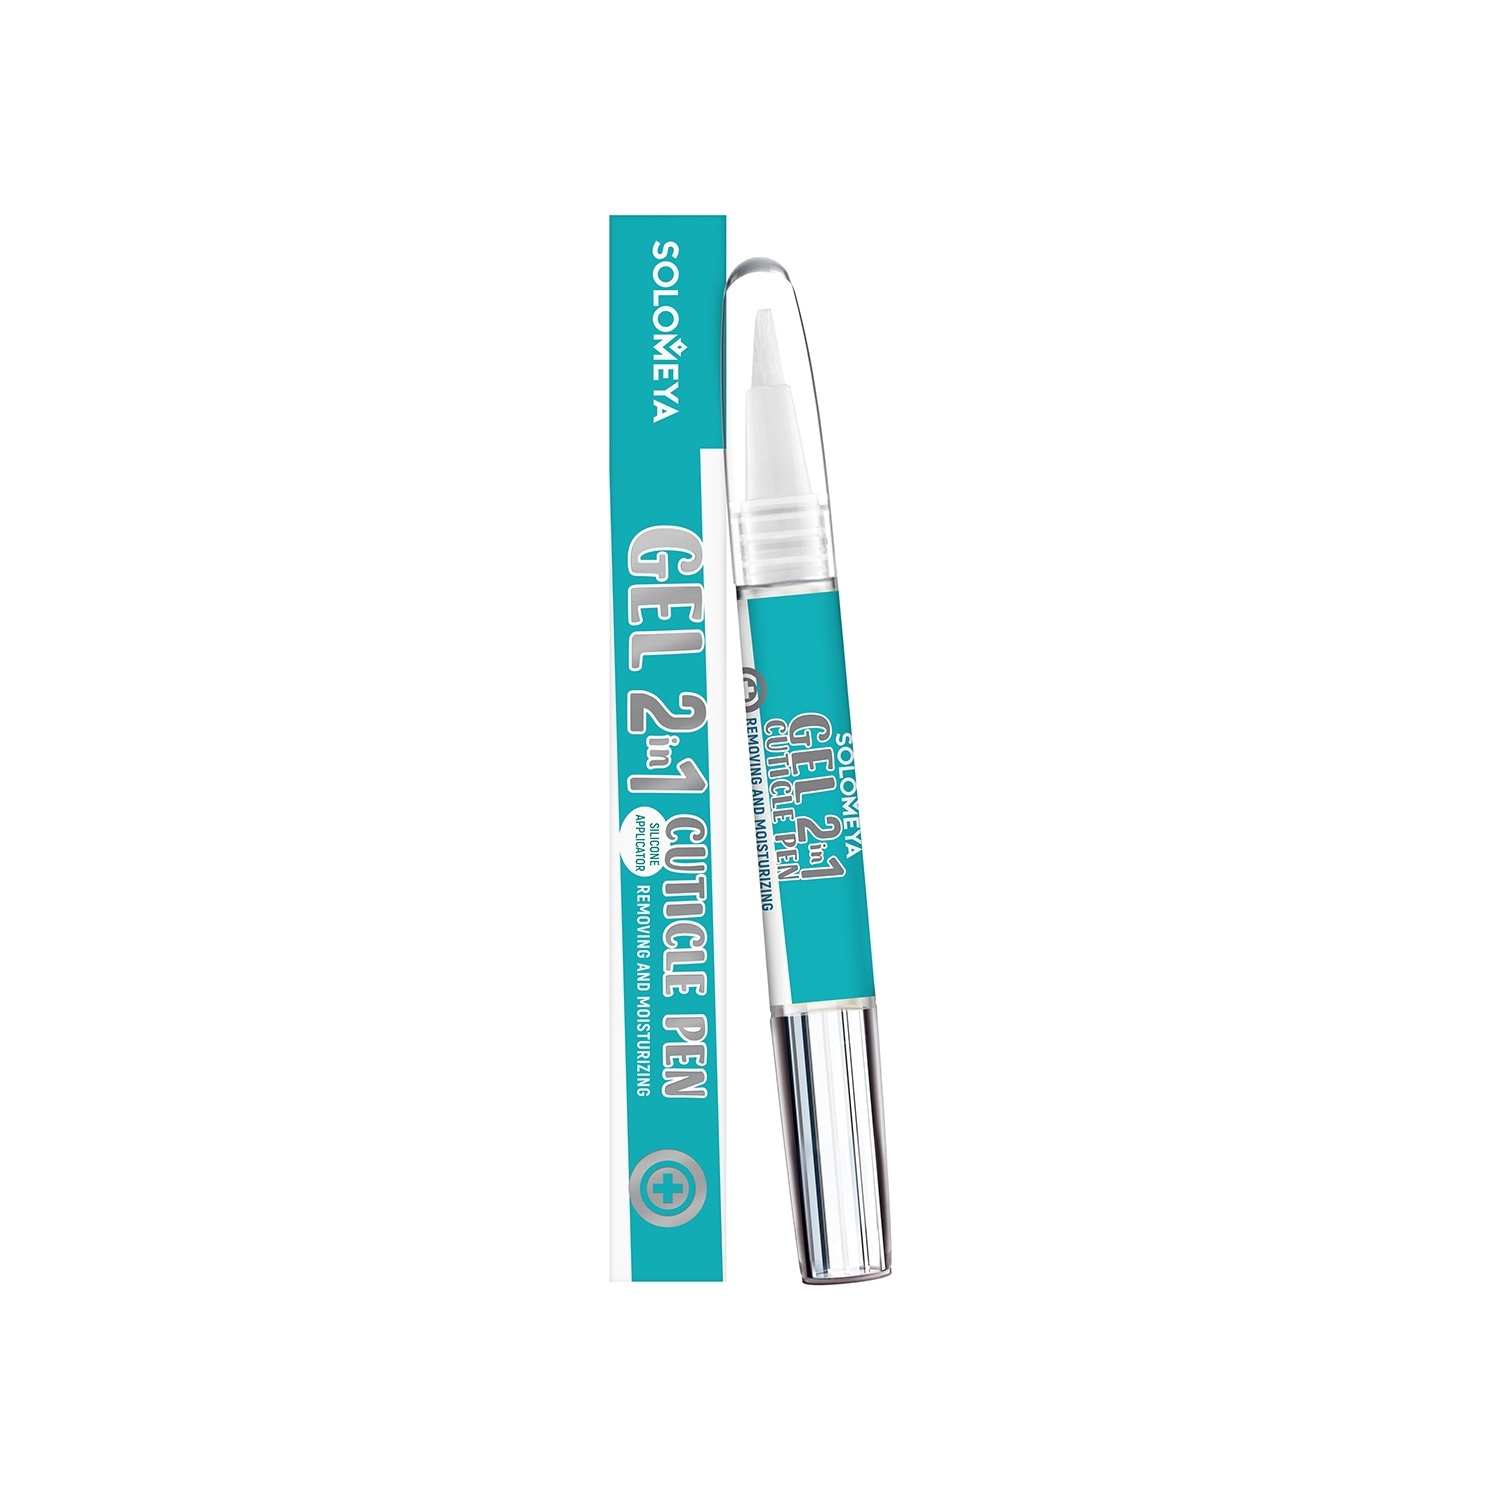 Гель 2в1 для удаления и увлажнения кутикулы в карандаше Cuticle Pen купить в VISAGEHALL